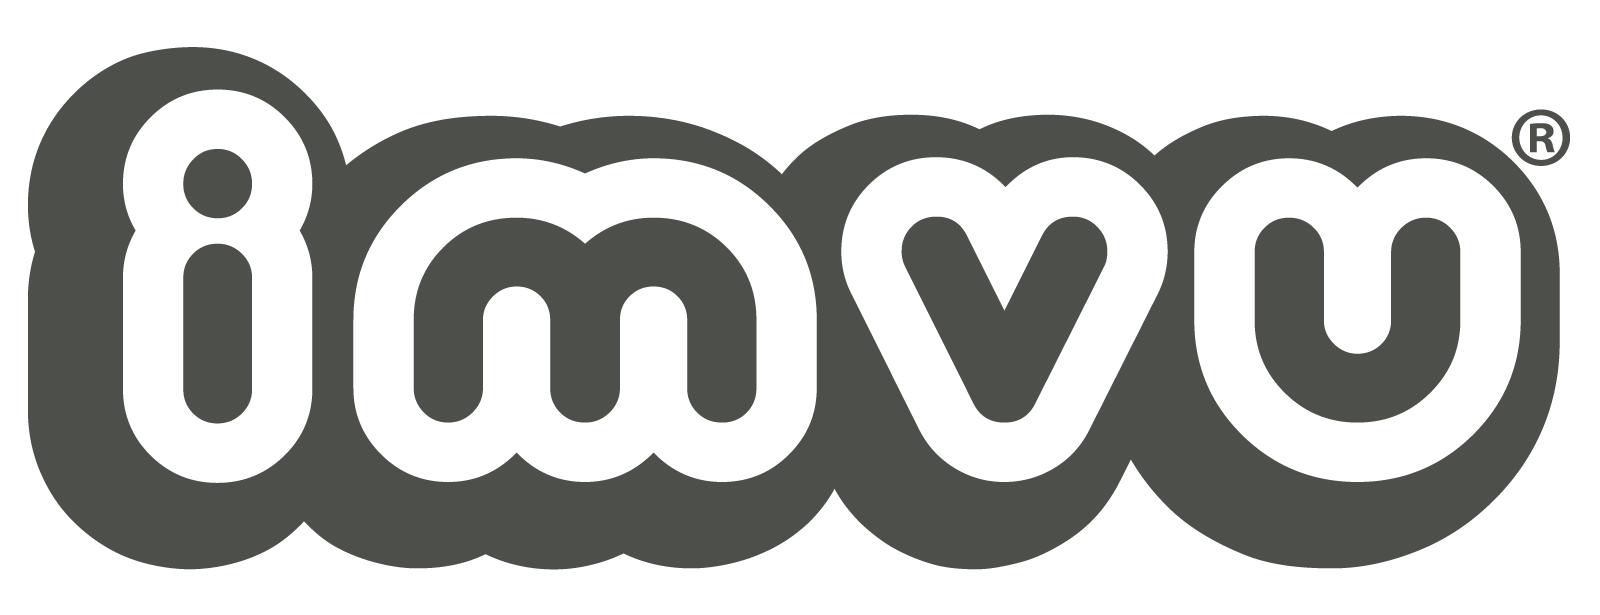 IMVU Logo - IMVU | IMVU Wiki | FANDOM powered by Wikia